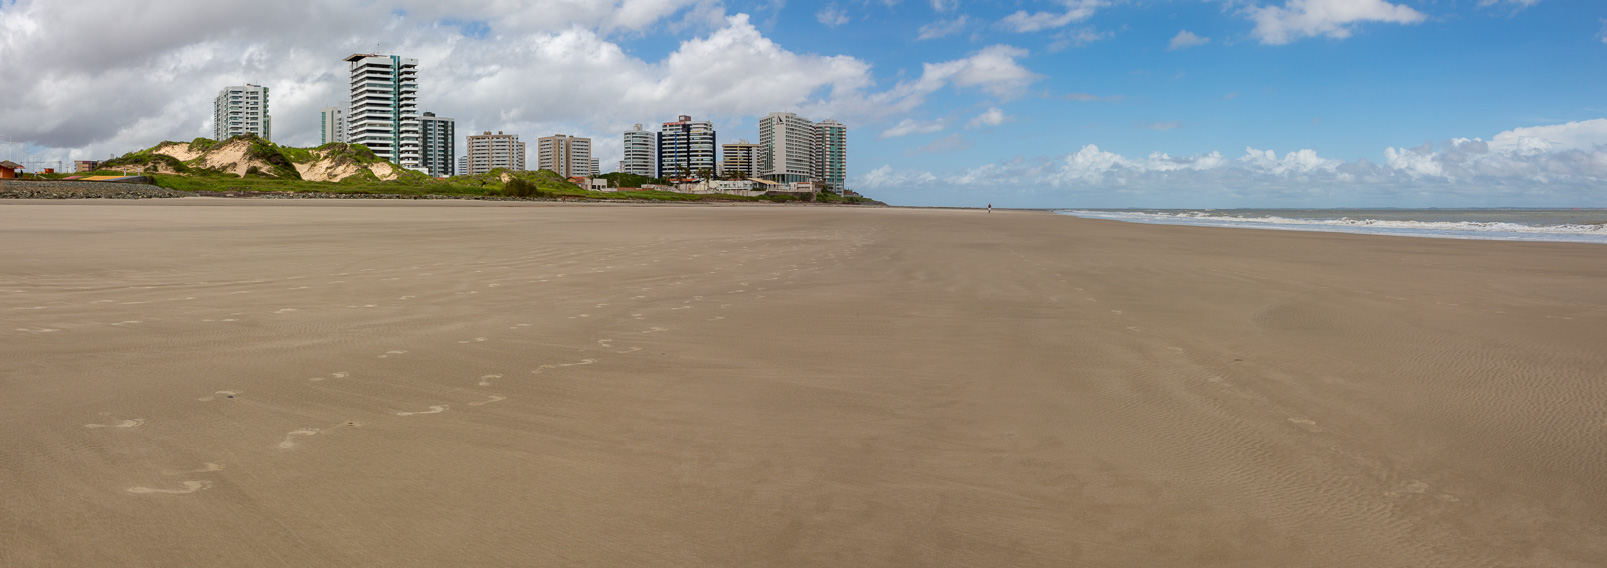 L'immense plage de Sao Luis.